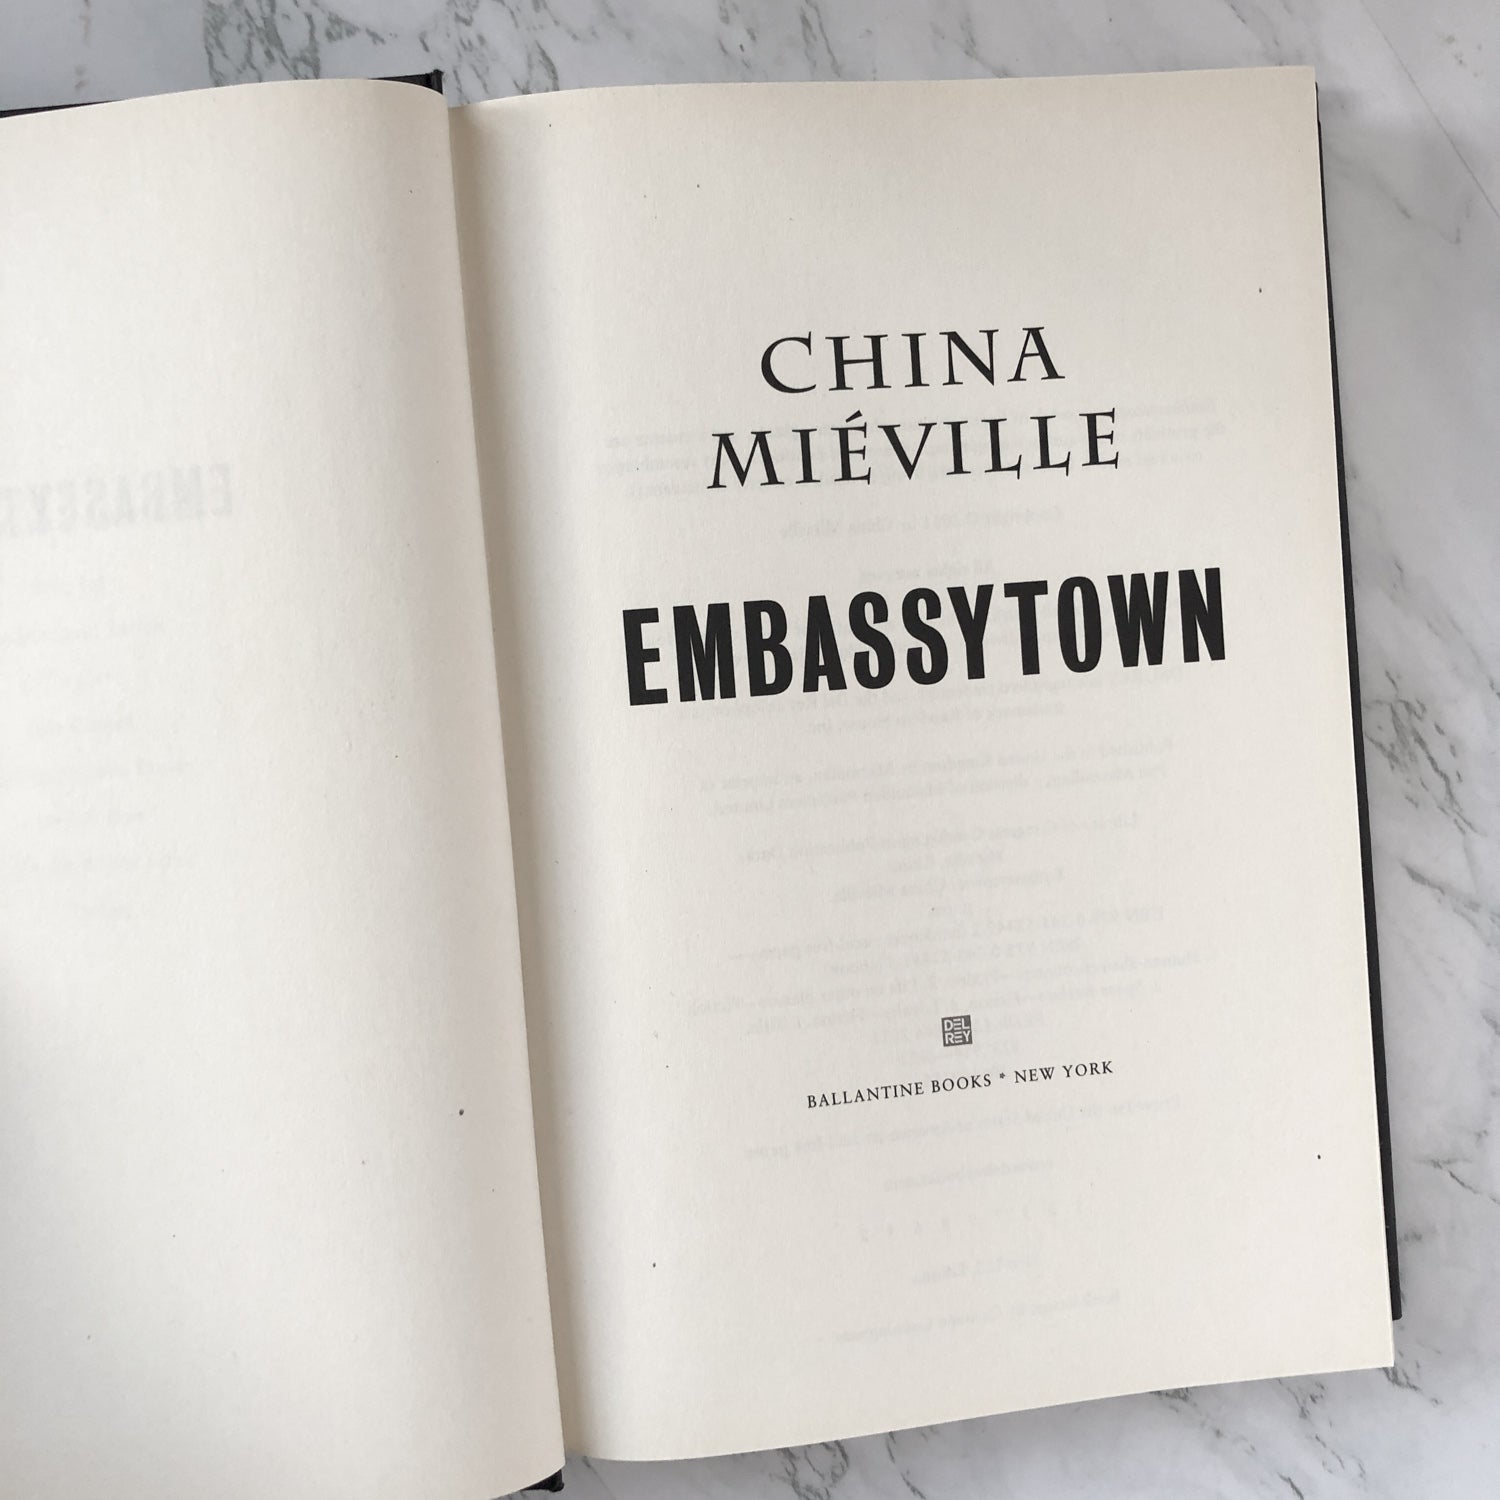 embassytown by china miéville